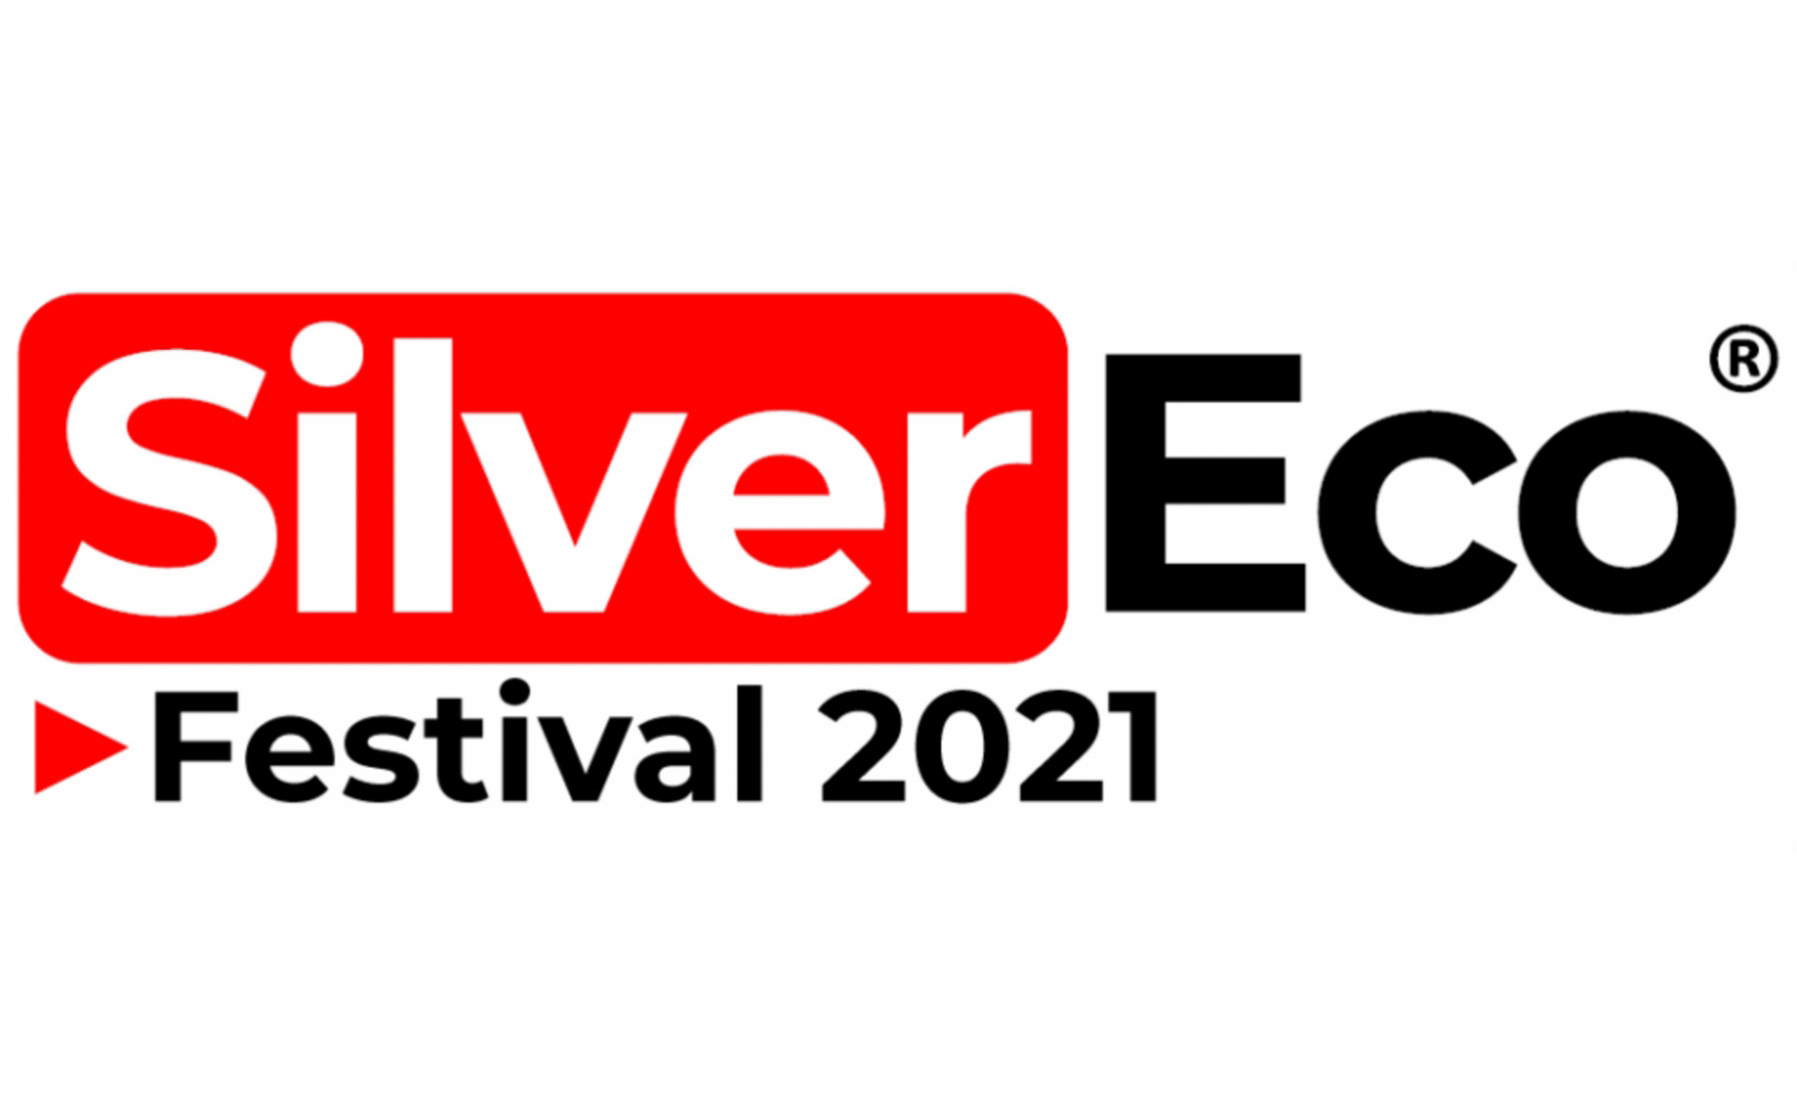 logotipo del festival silvereco 2021